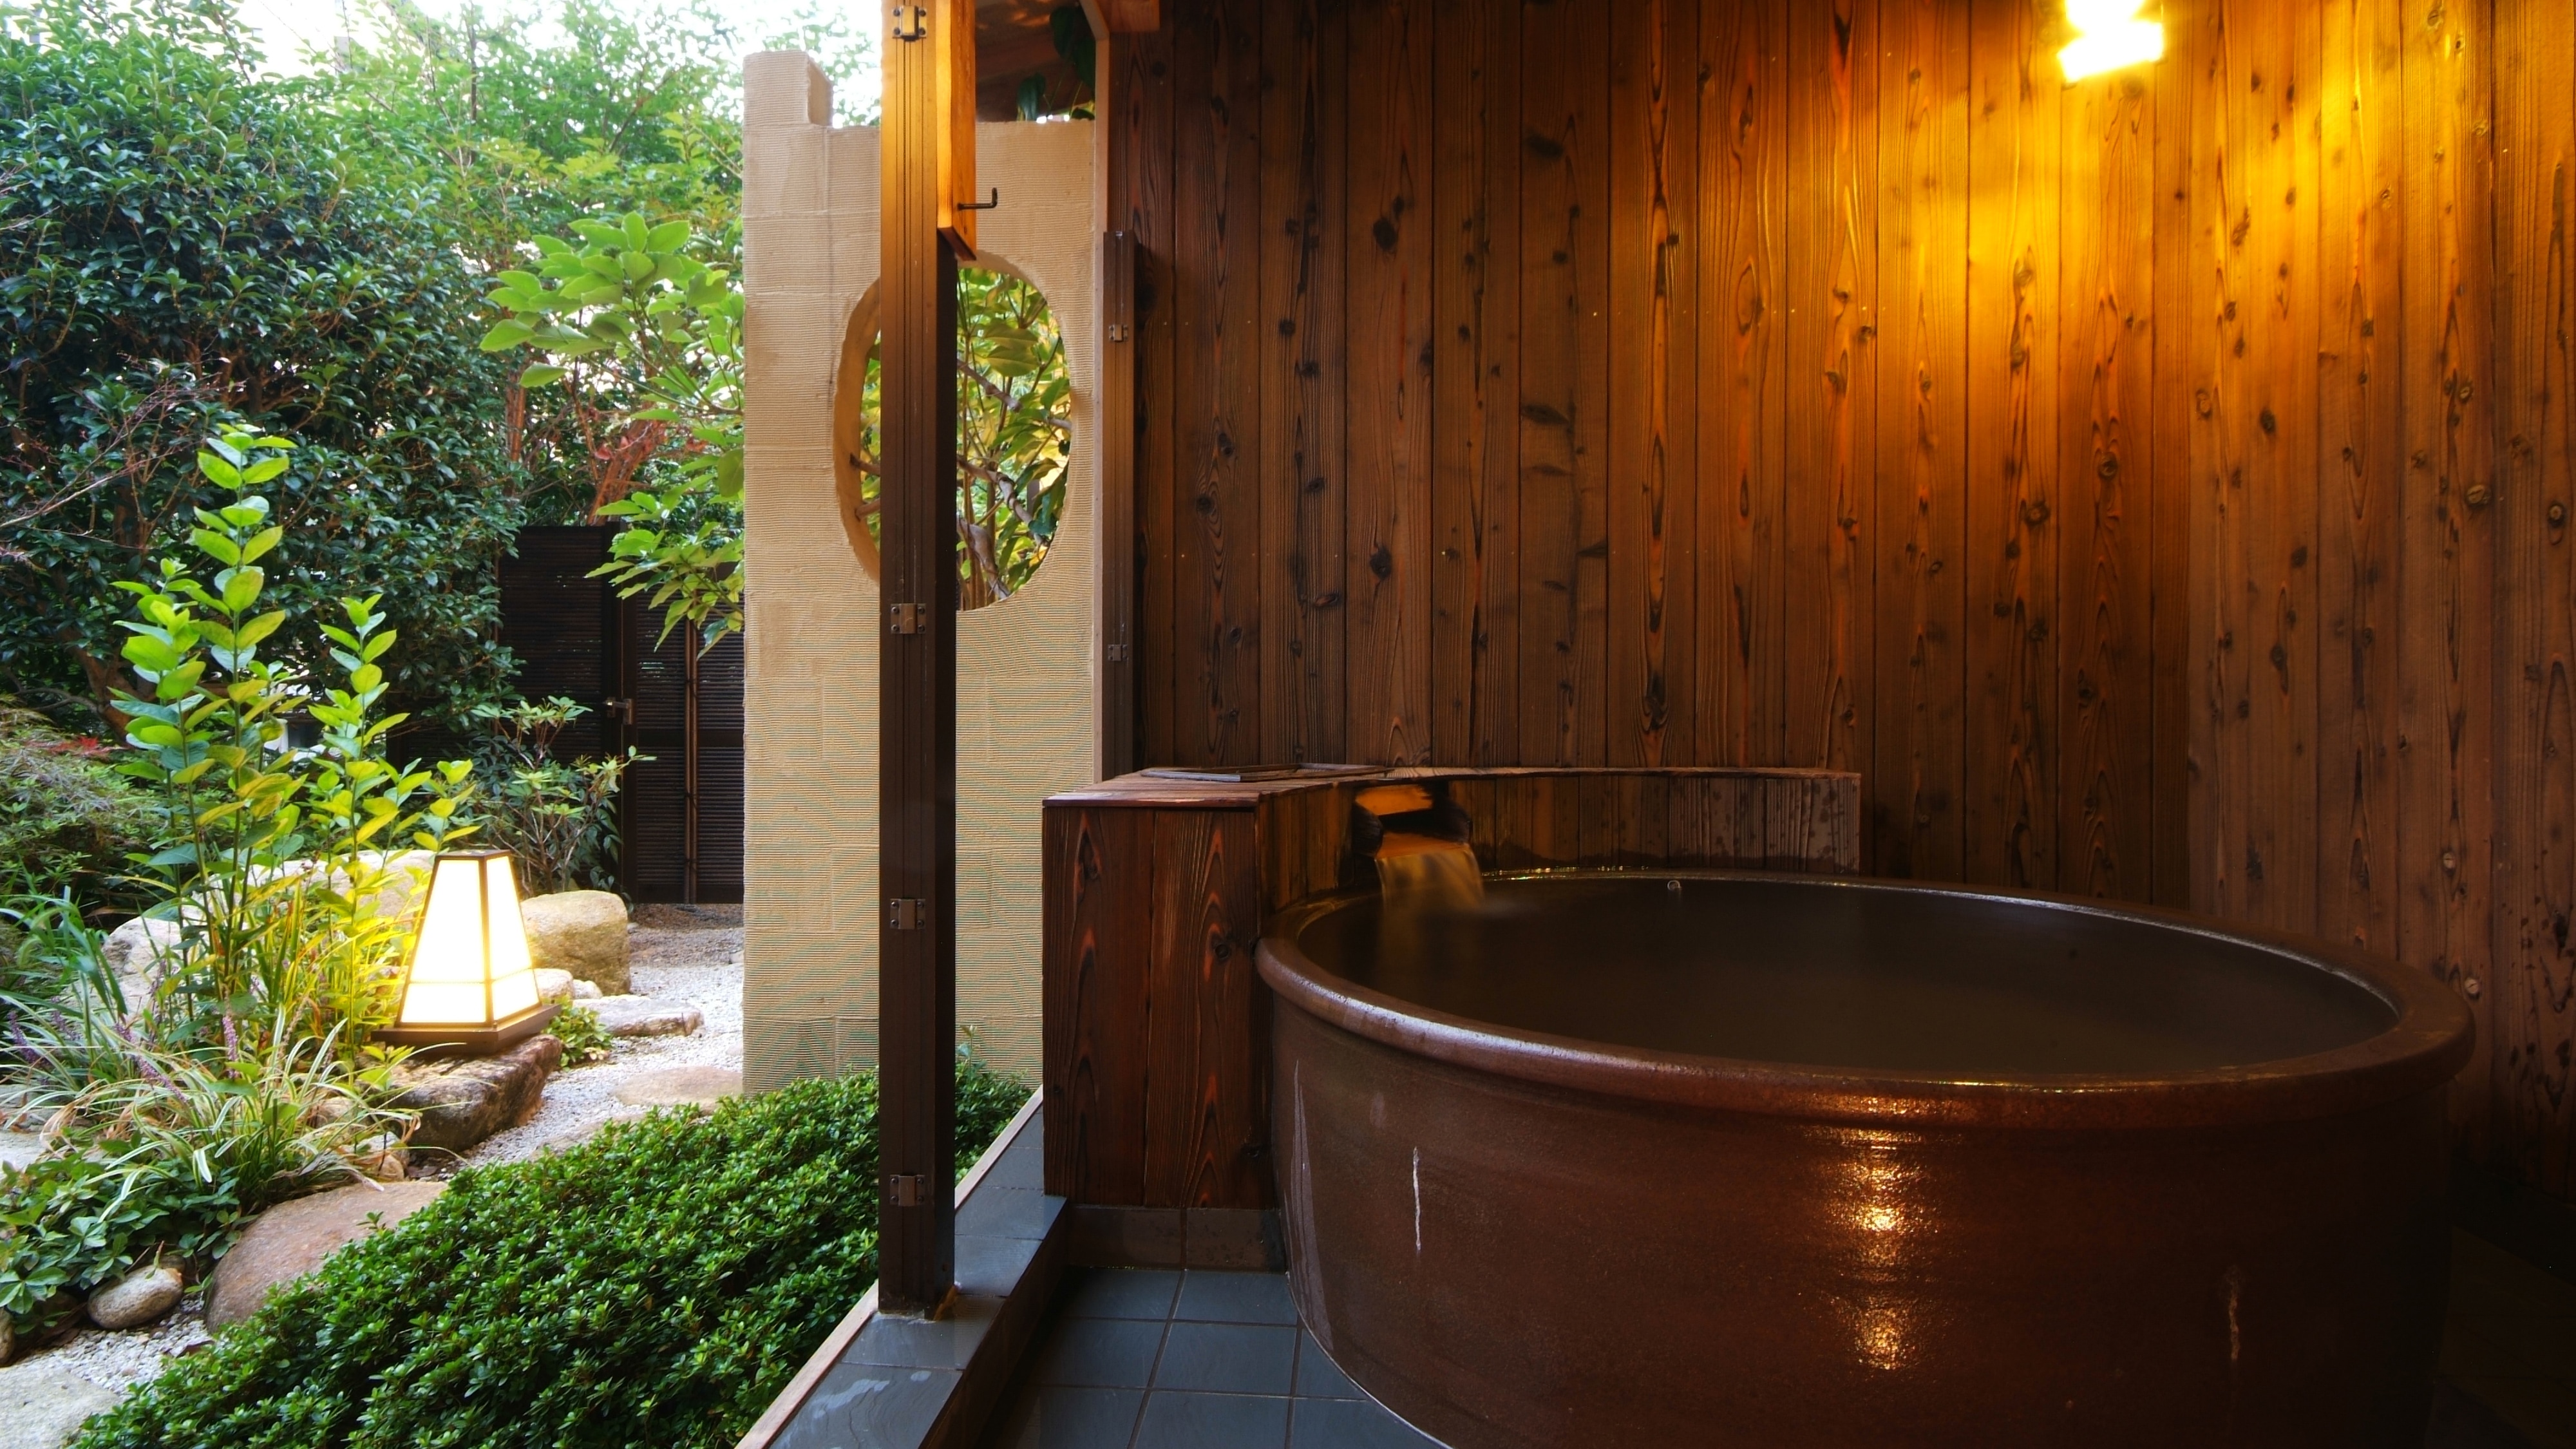 帶露天浴池 ◆ 客房極水亭-Yugao- ◆ 日式和西式房間 72.86 平方米 1 間限定客房 * 退房時間：12:00